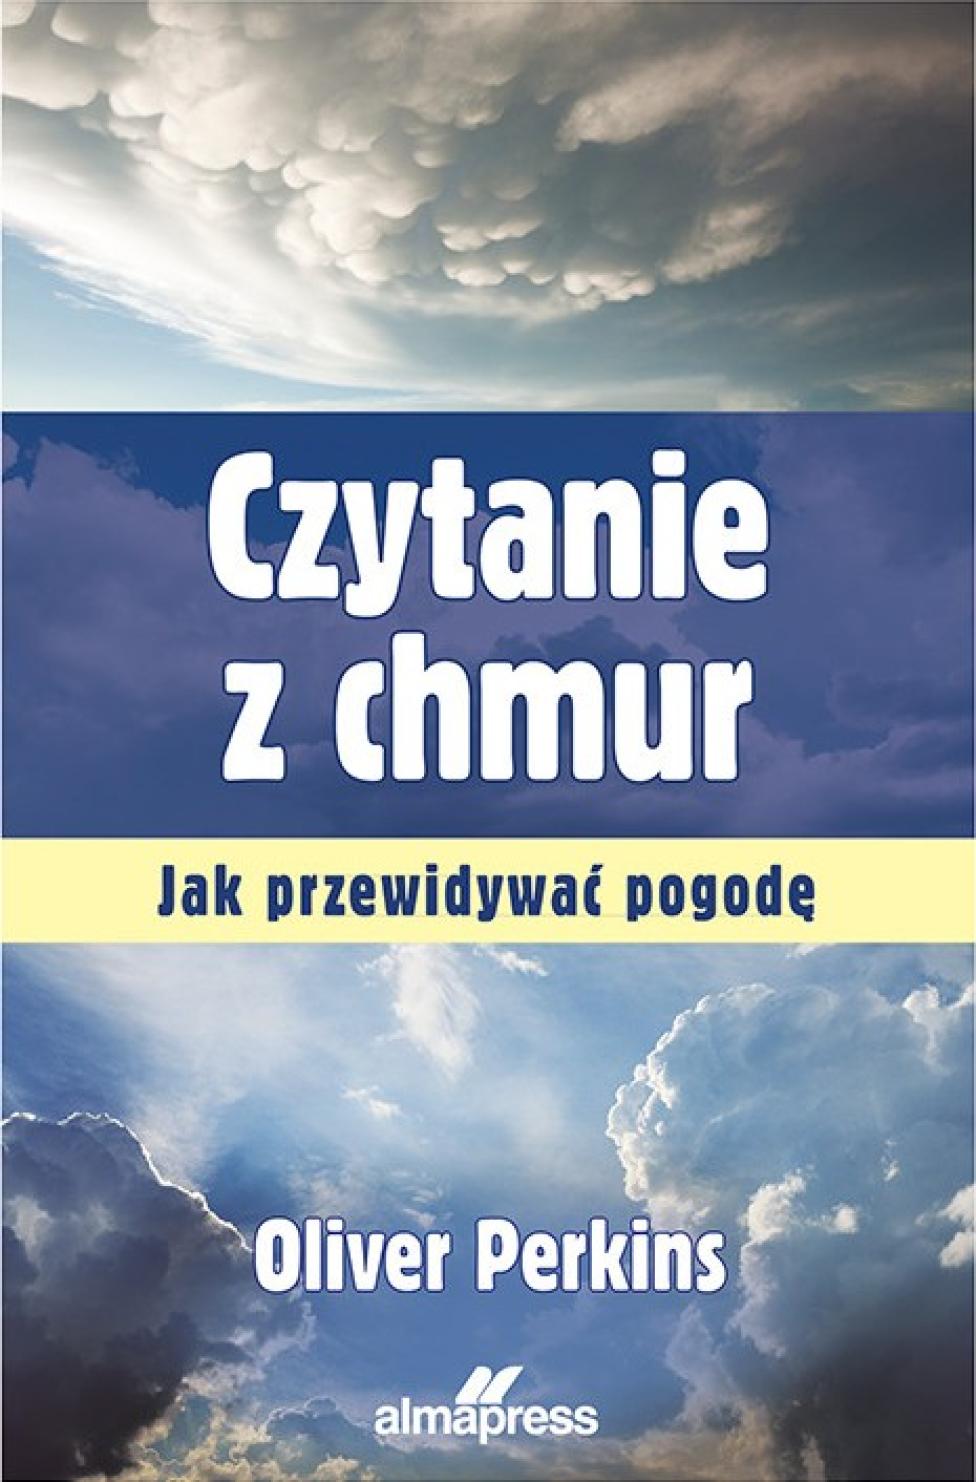 Książka "Czytanie z chmur" (fot. Oficyna Wydawnicza Alma - Press)